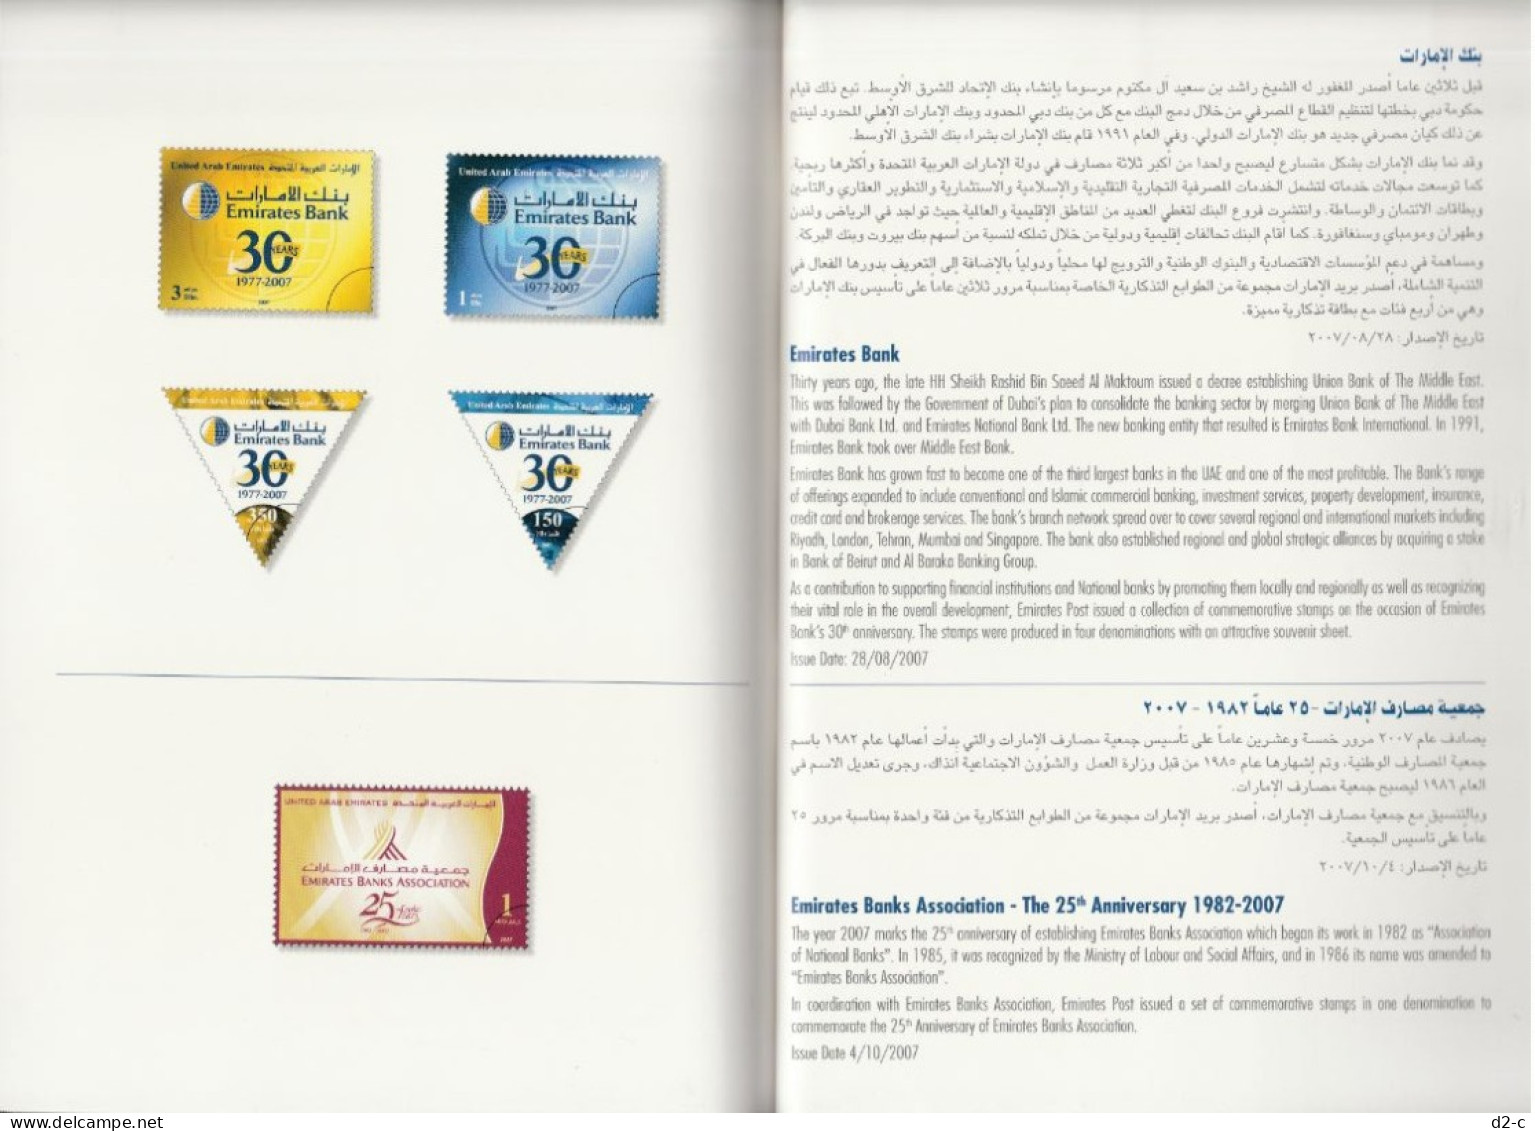 2007 Annual Stamp Book of United Arab Emirates (UAE)